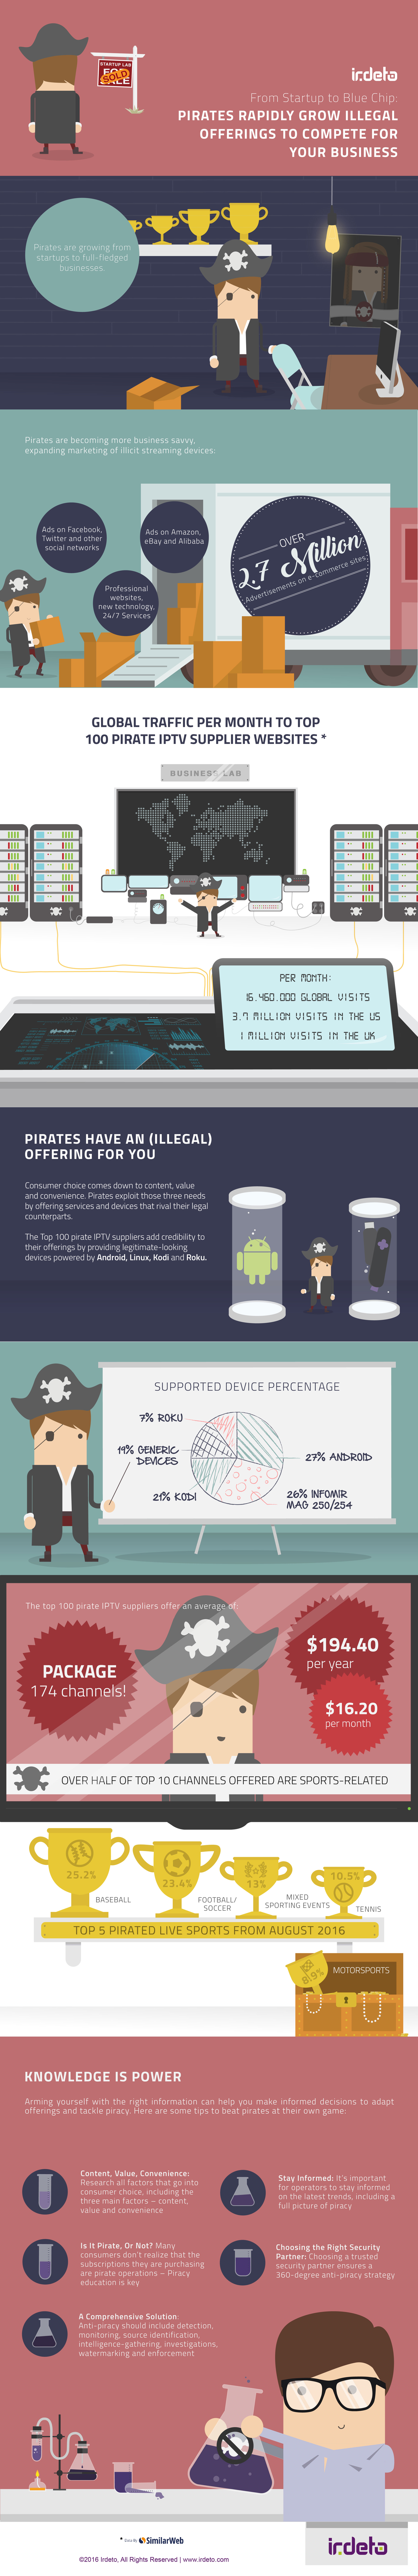 piracy-data-infographic